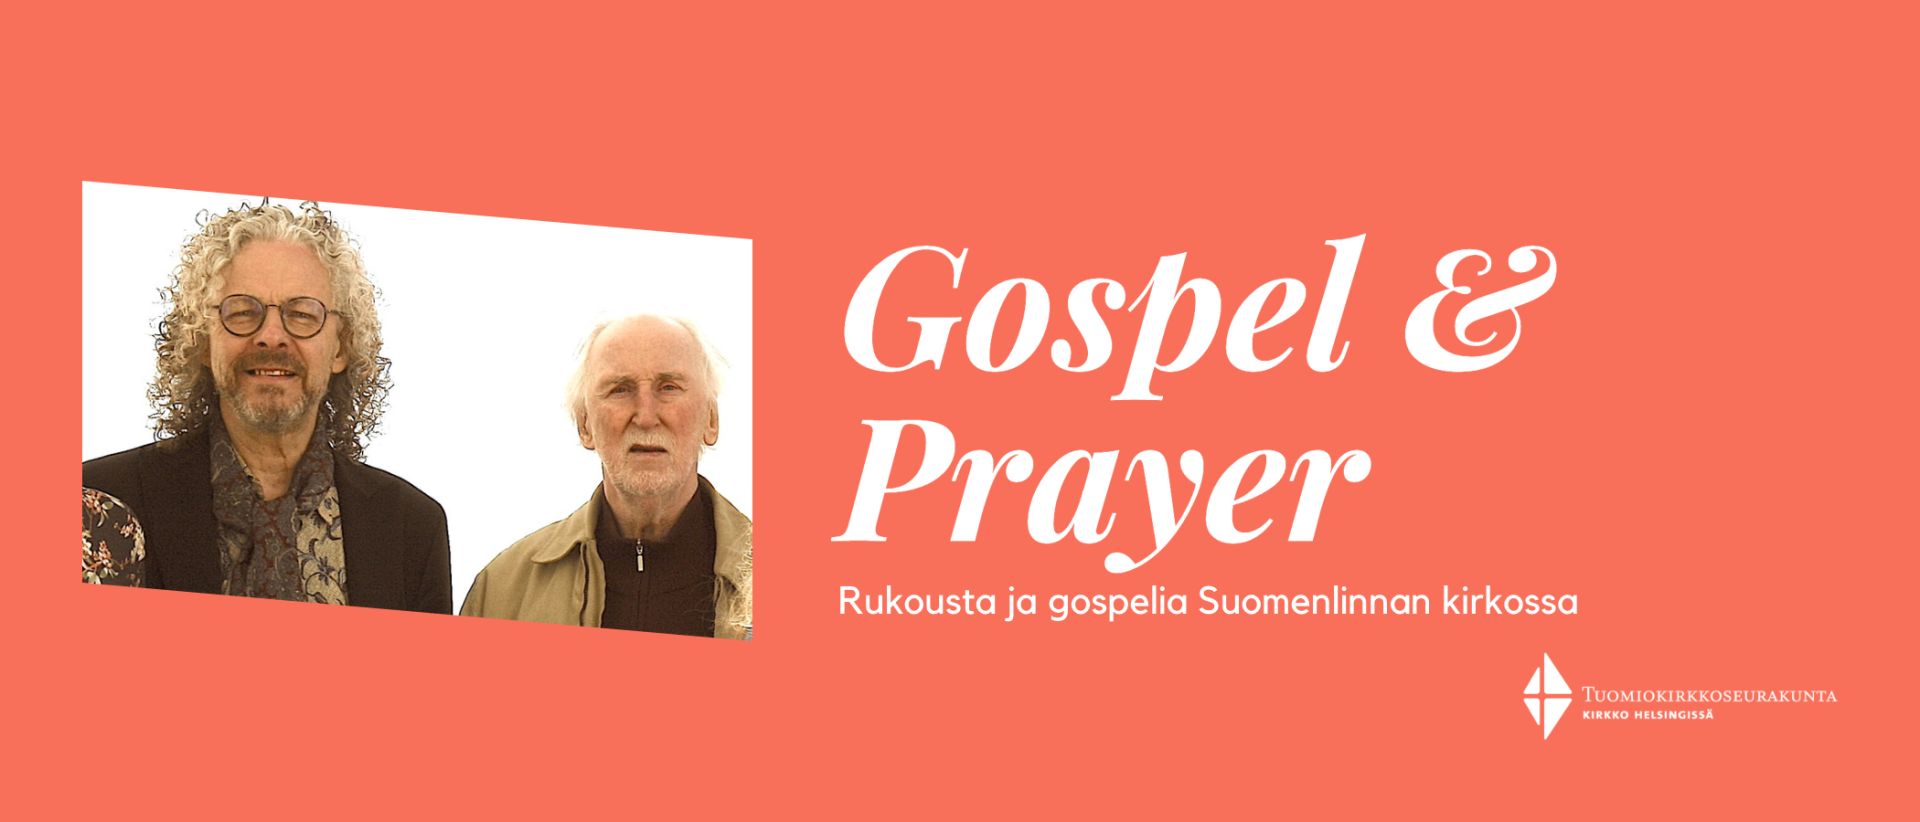 Punaisella taustalla teksti: Gospel & Prayer - rukousta ja gospelia Suomenlinnan kirkossa